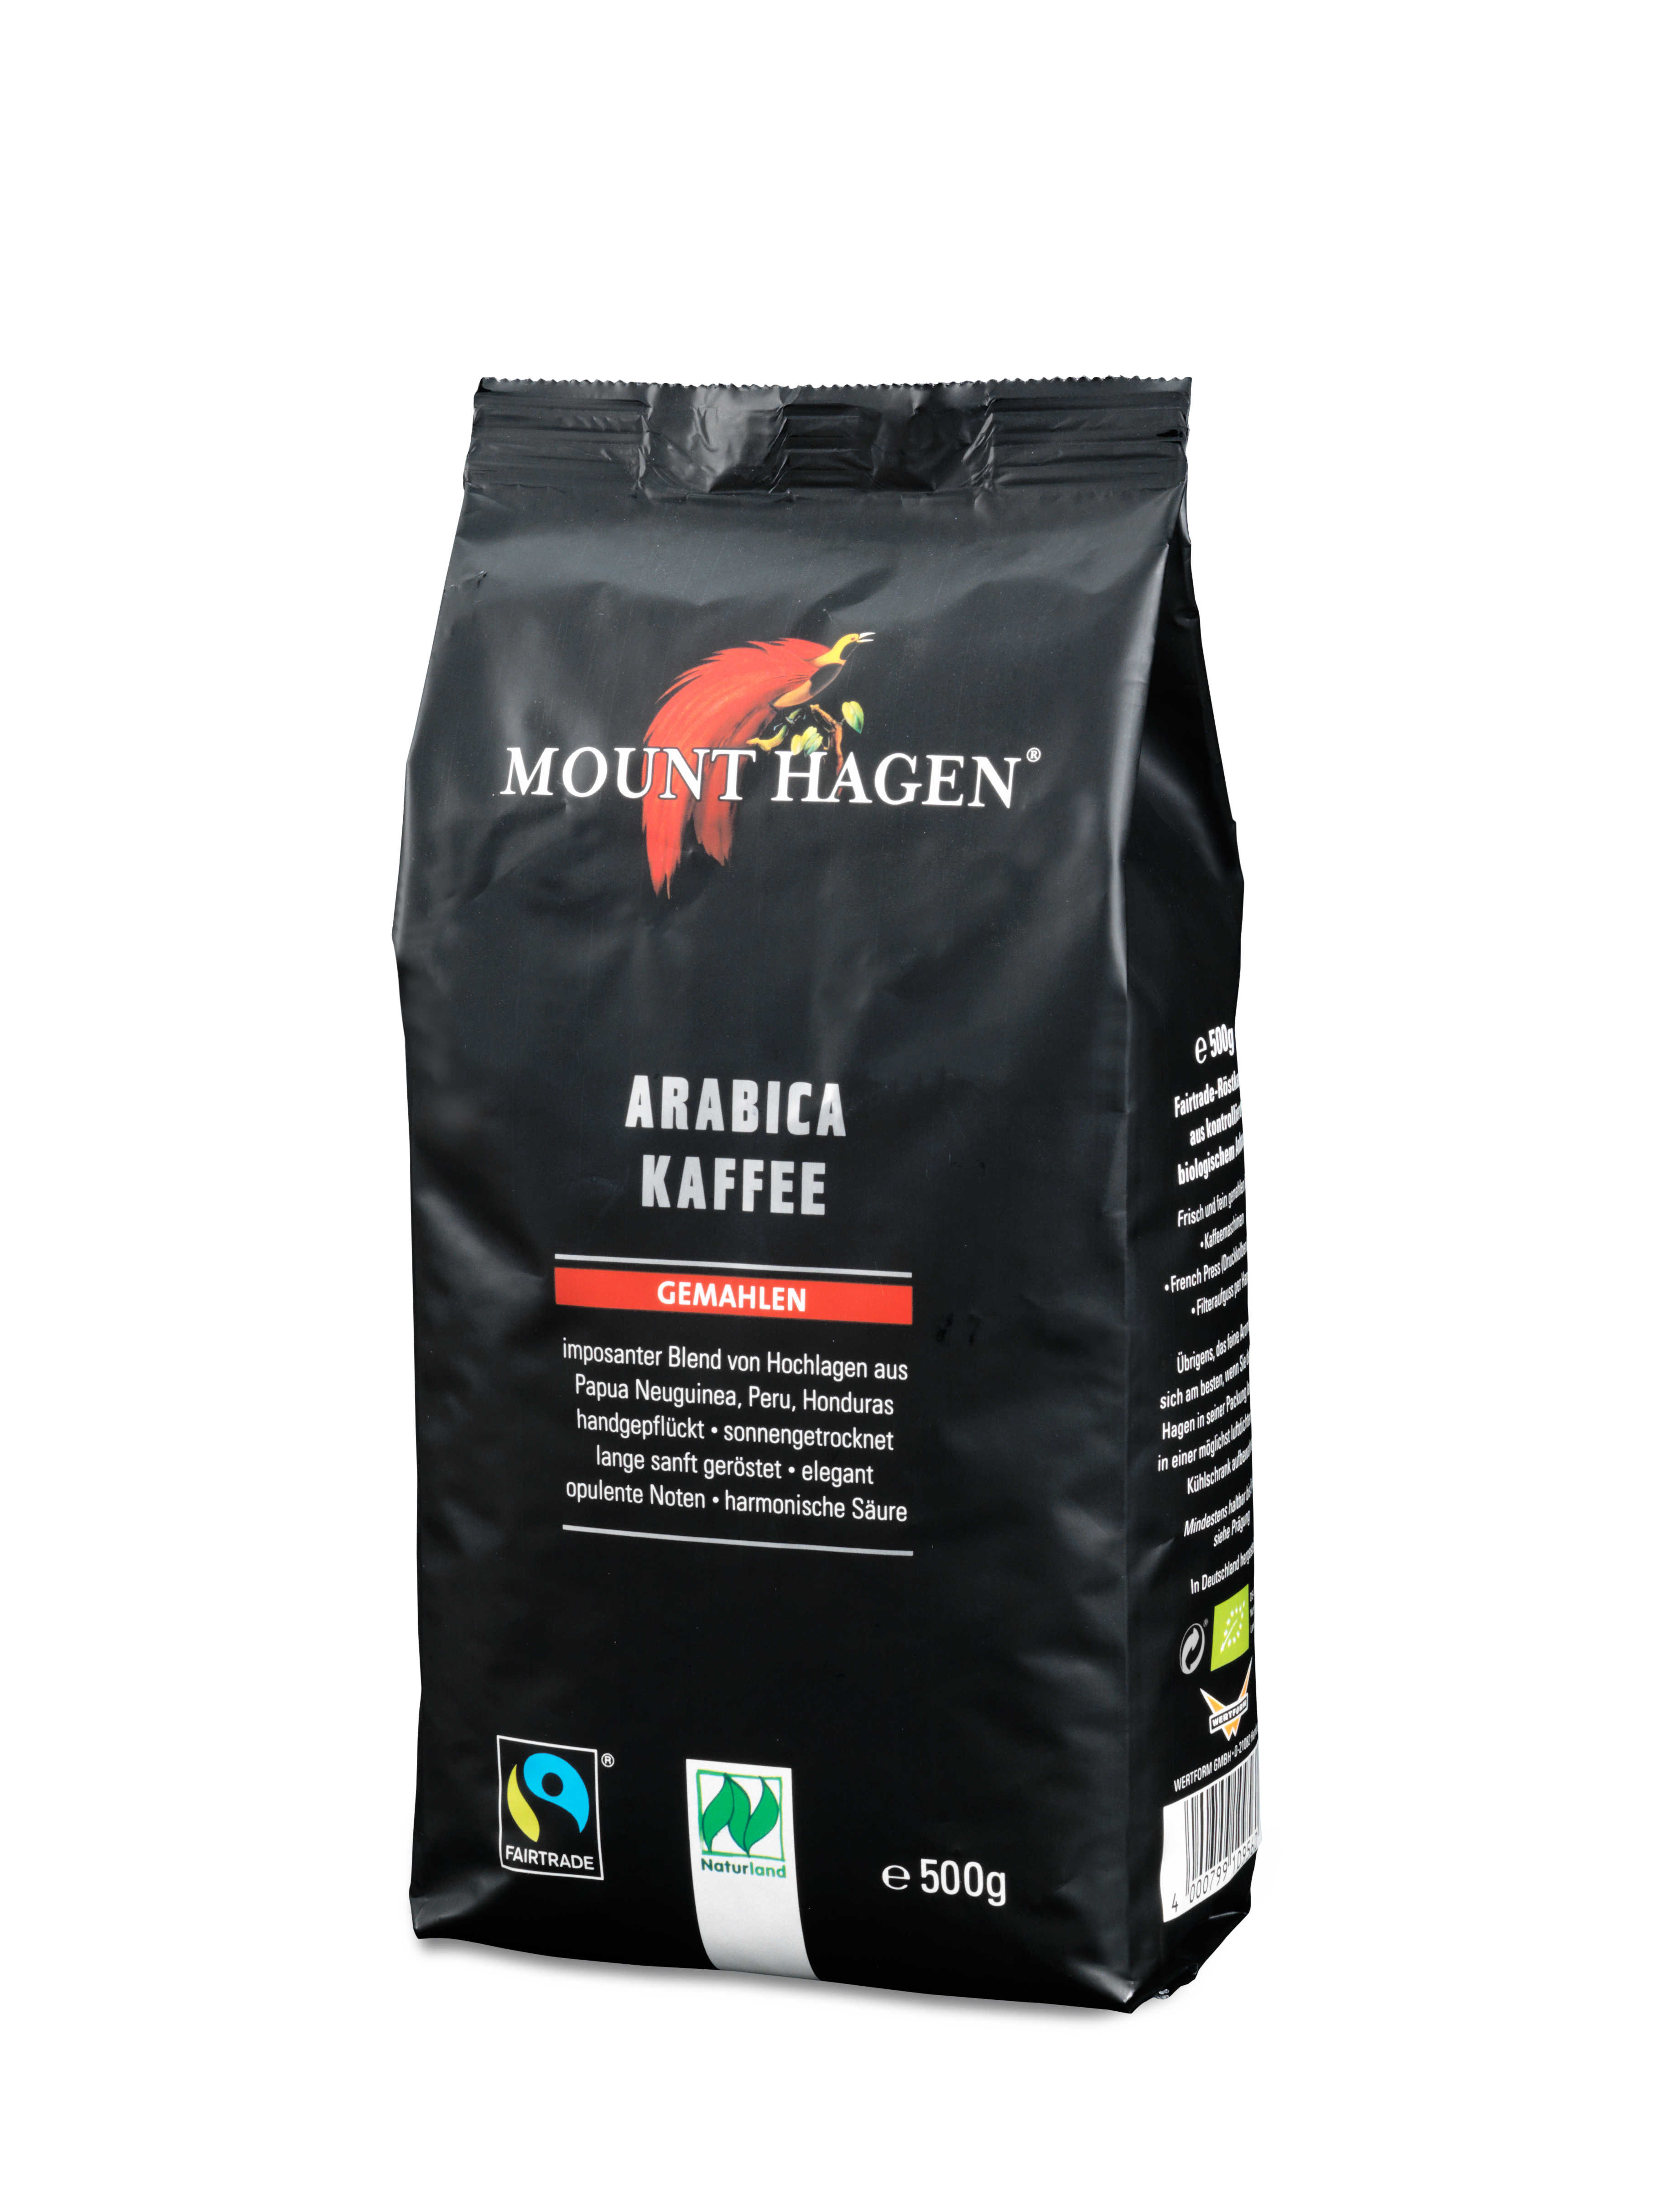 Mount Hagen Arabica Kaffee, gemahlen-